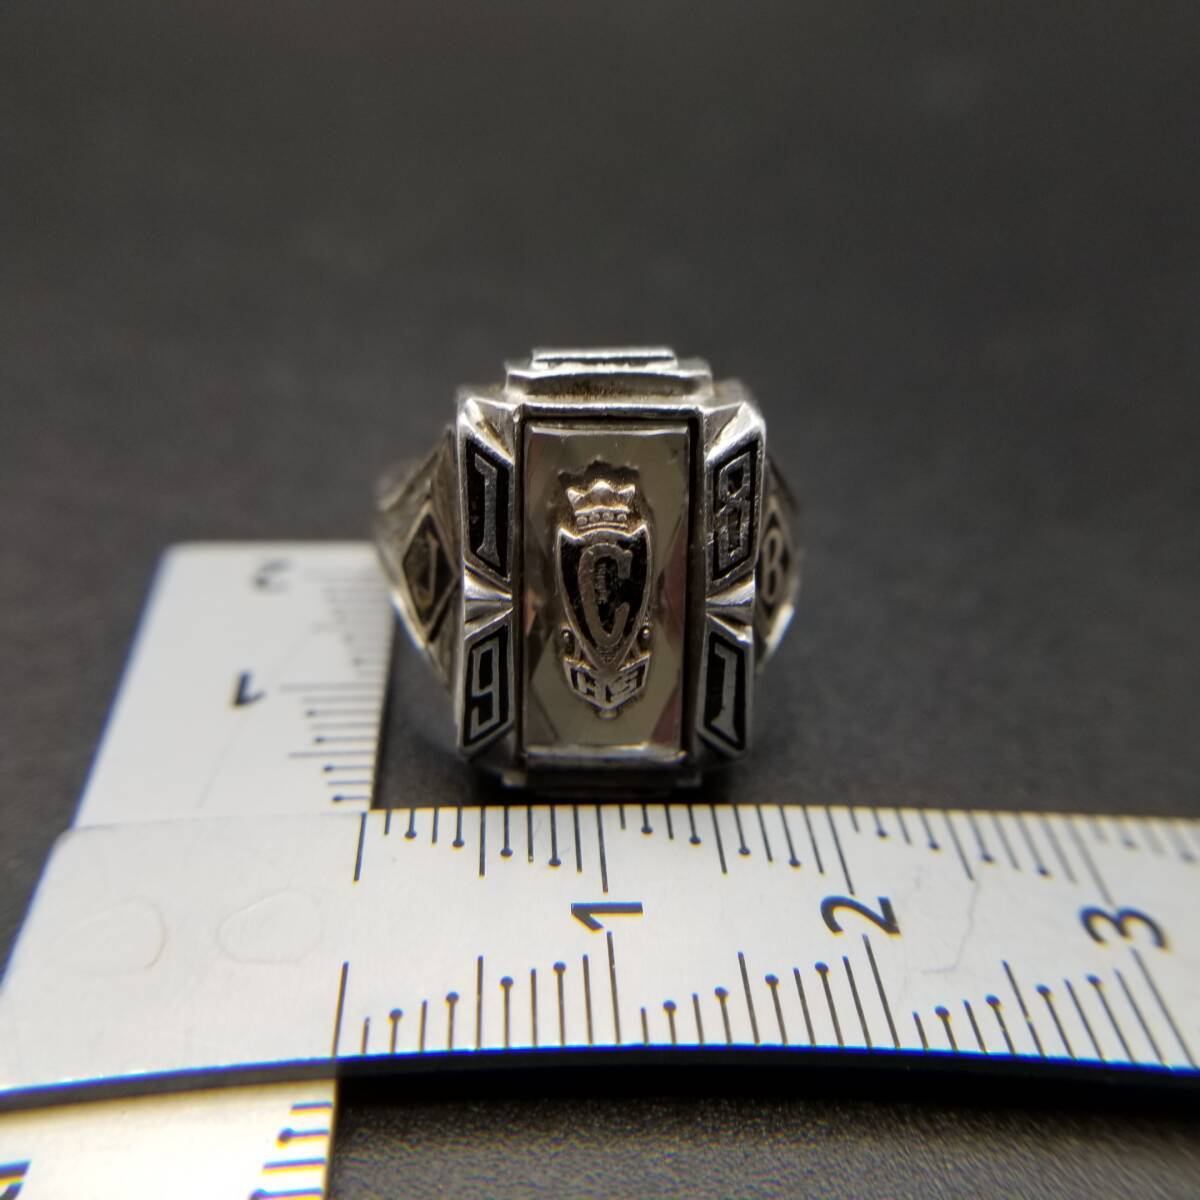 1981年 Herff Jones社製 米国 ヴィンテージ クラスリング イニシャル JCB High School Ultrium素材 アールデコ紋章 指輪 存在感 Y14-Sの画像5